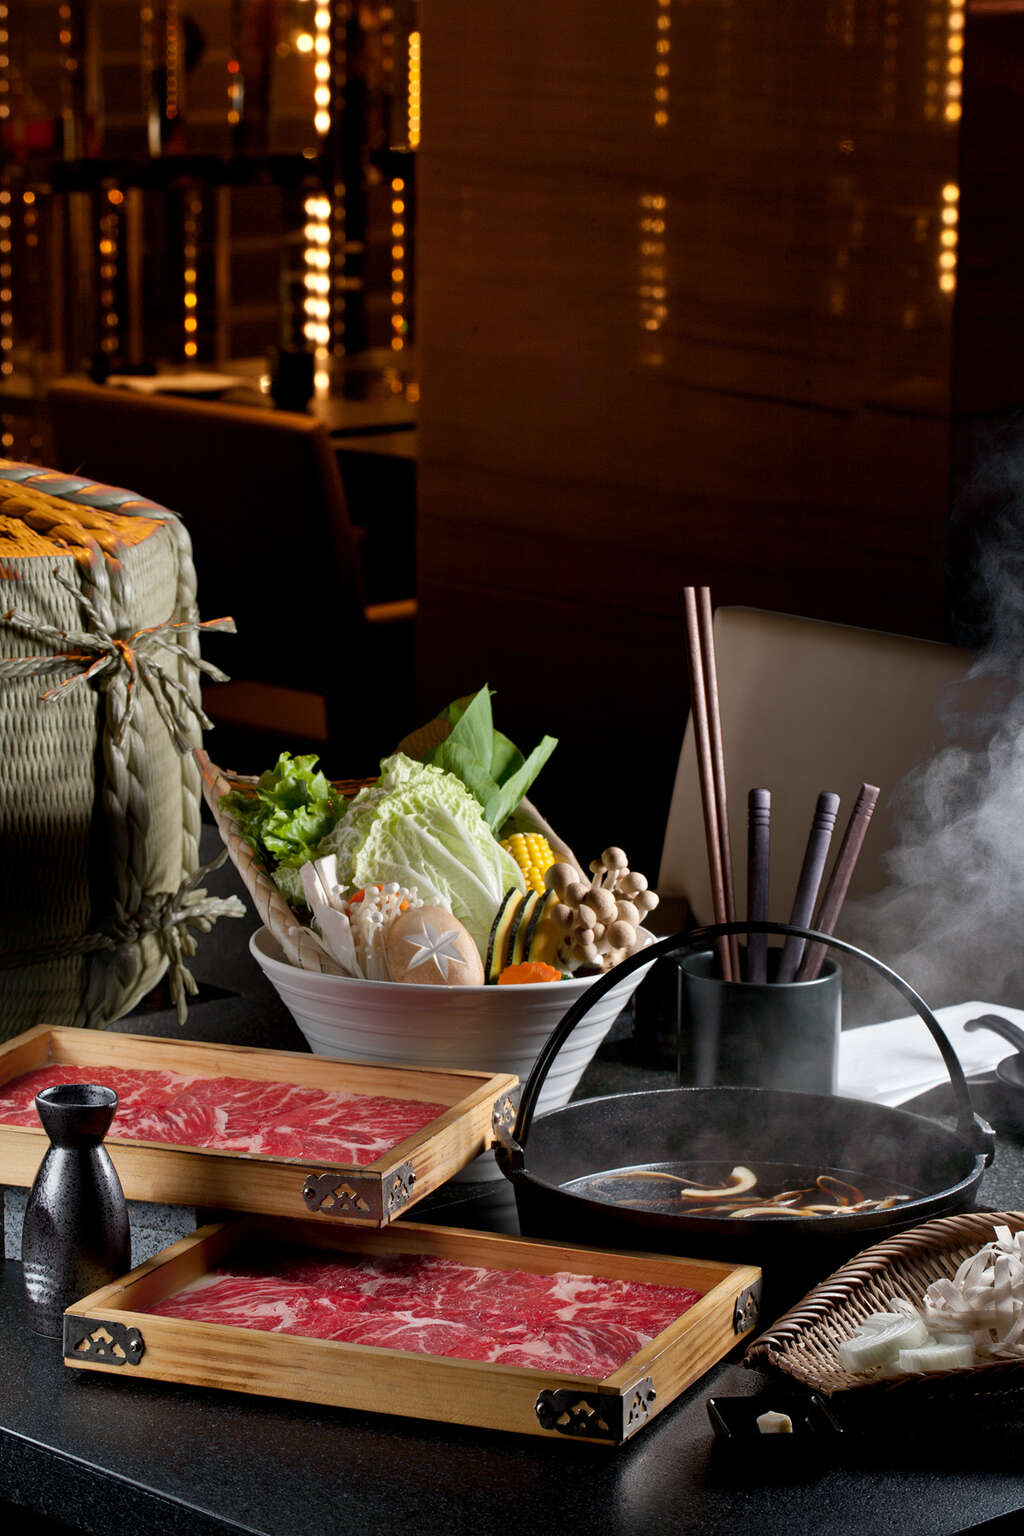 星級旅館翰品酒店「品」日式鍋物已報名參賽，主打壽喜燒及涮涮鍋加上主廚特製手工丸。